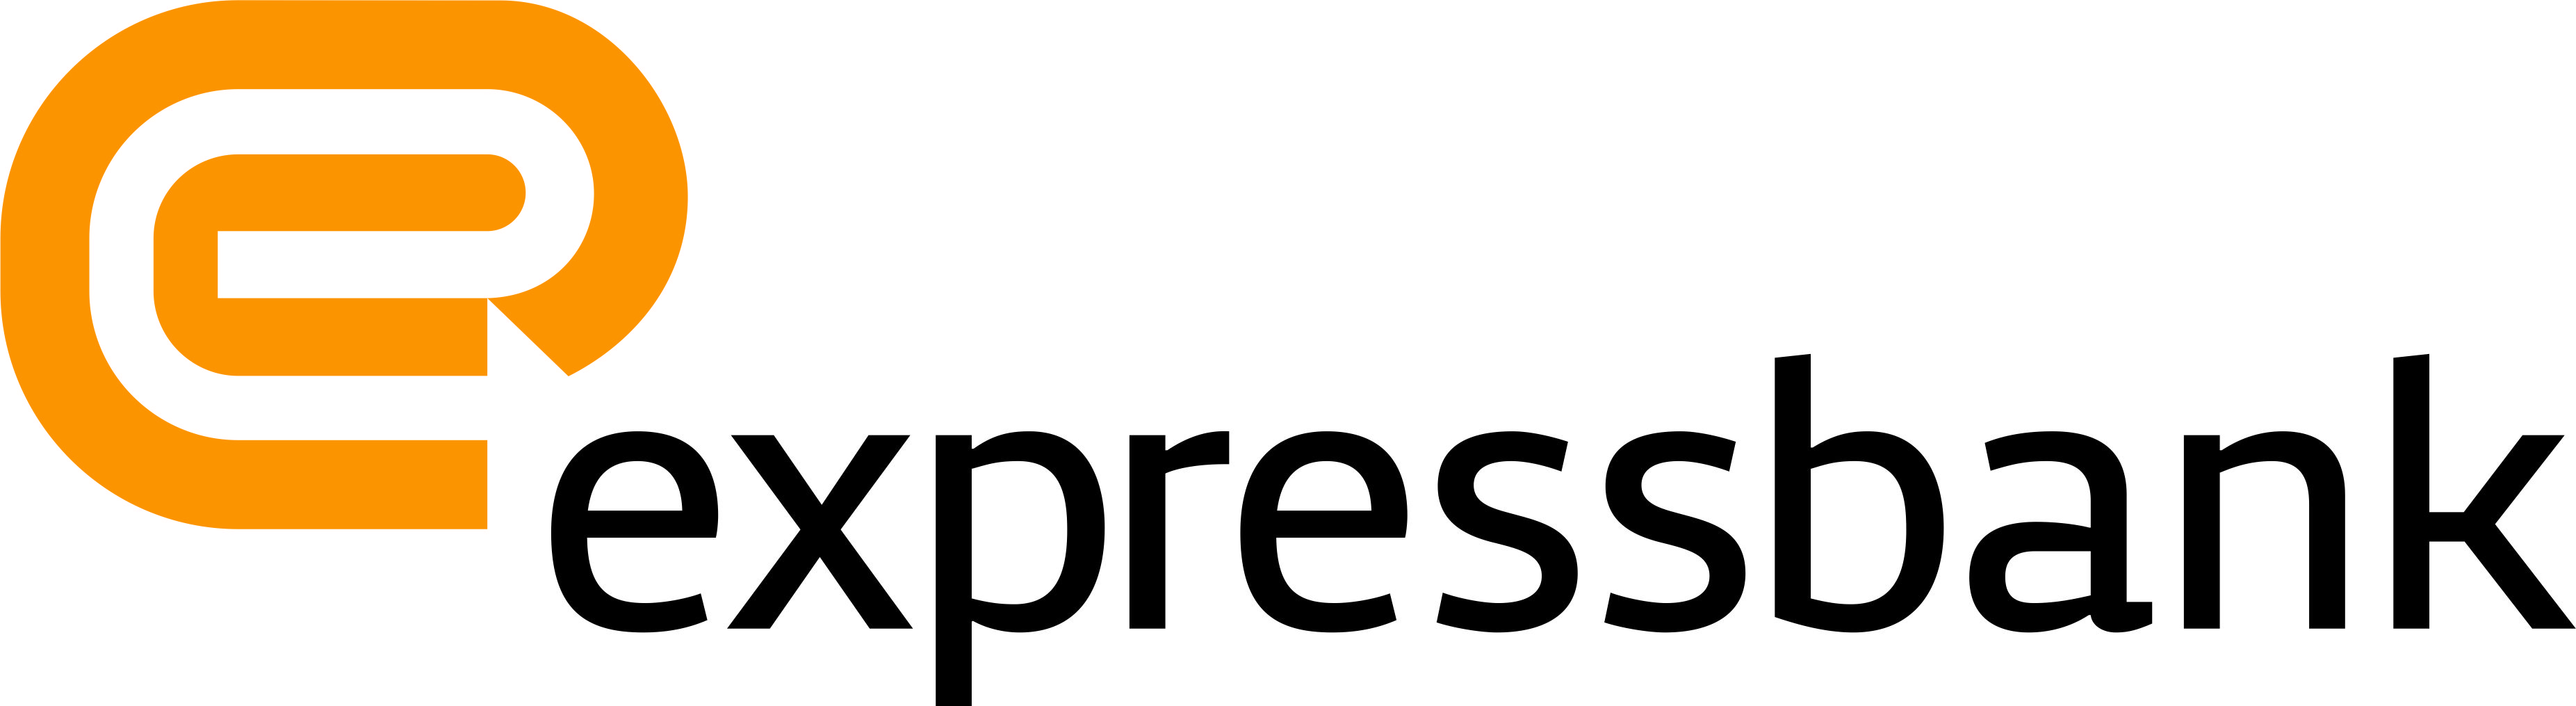 Expressbank обнародовал показатели за второй квартал 2015 года